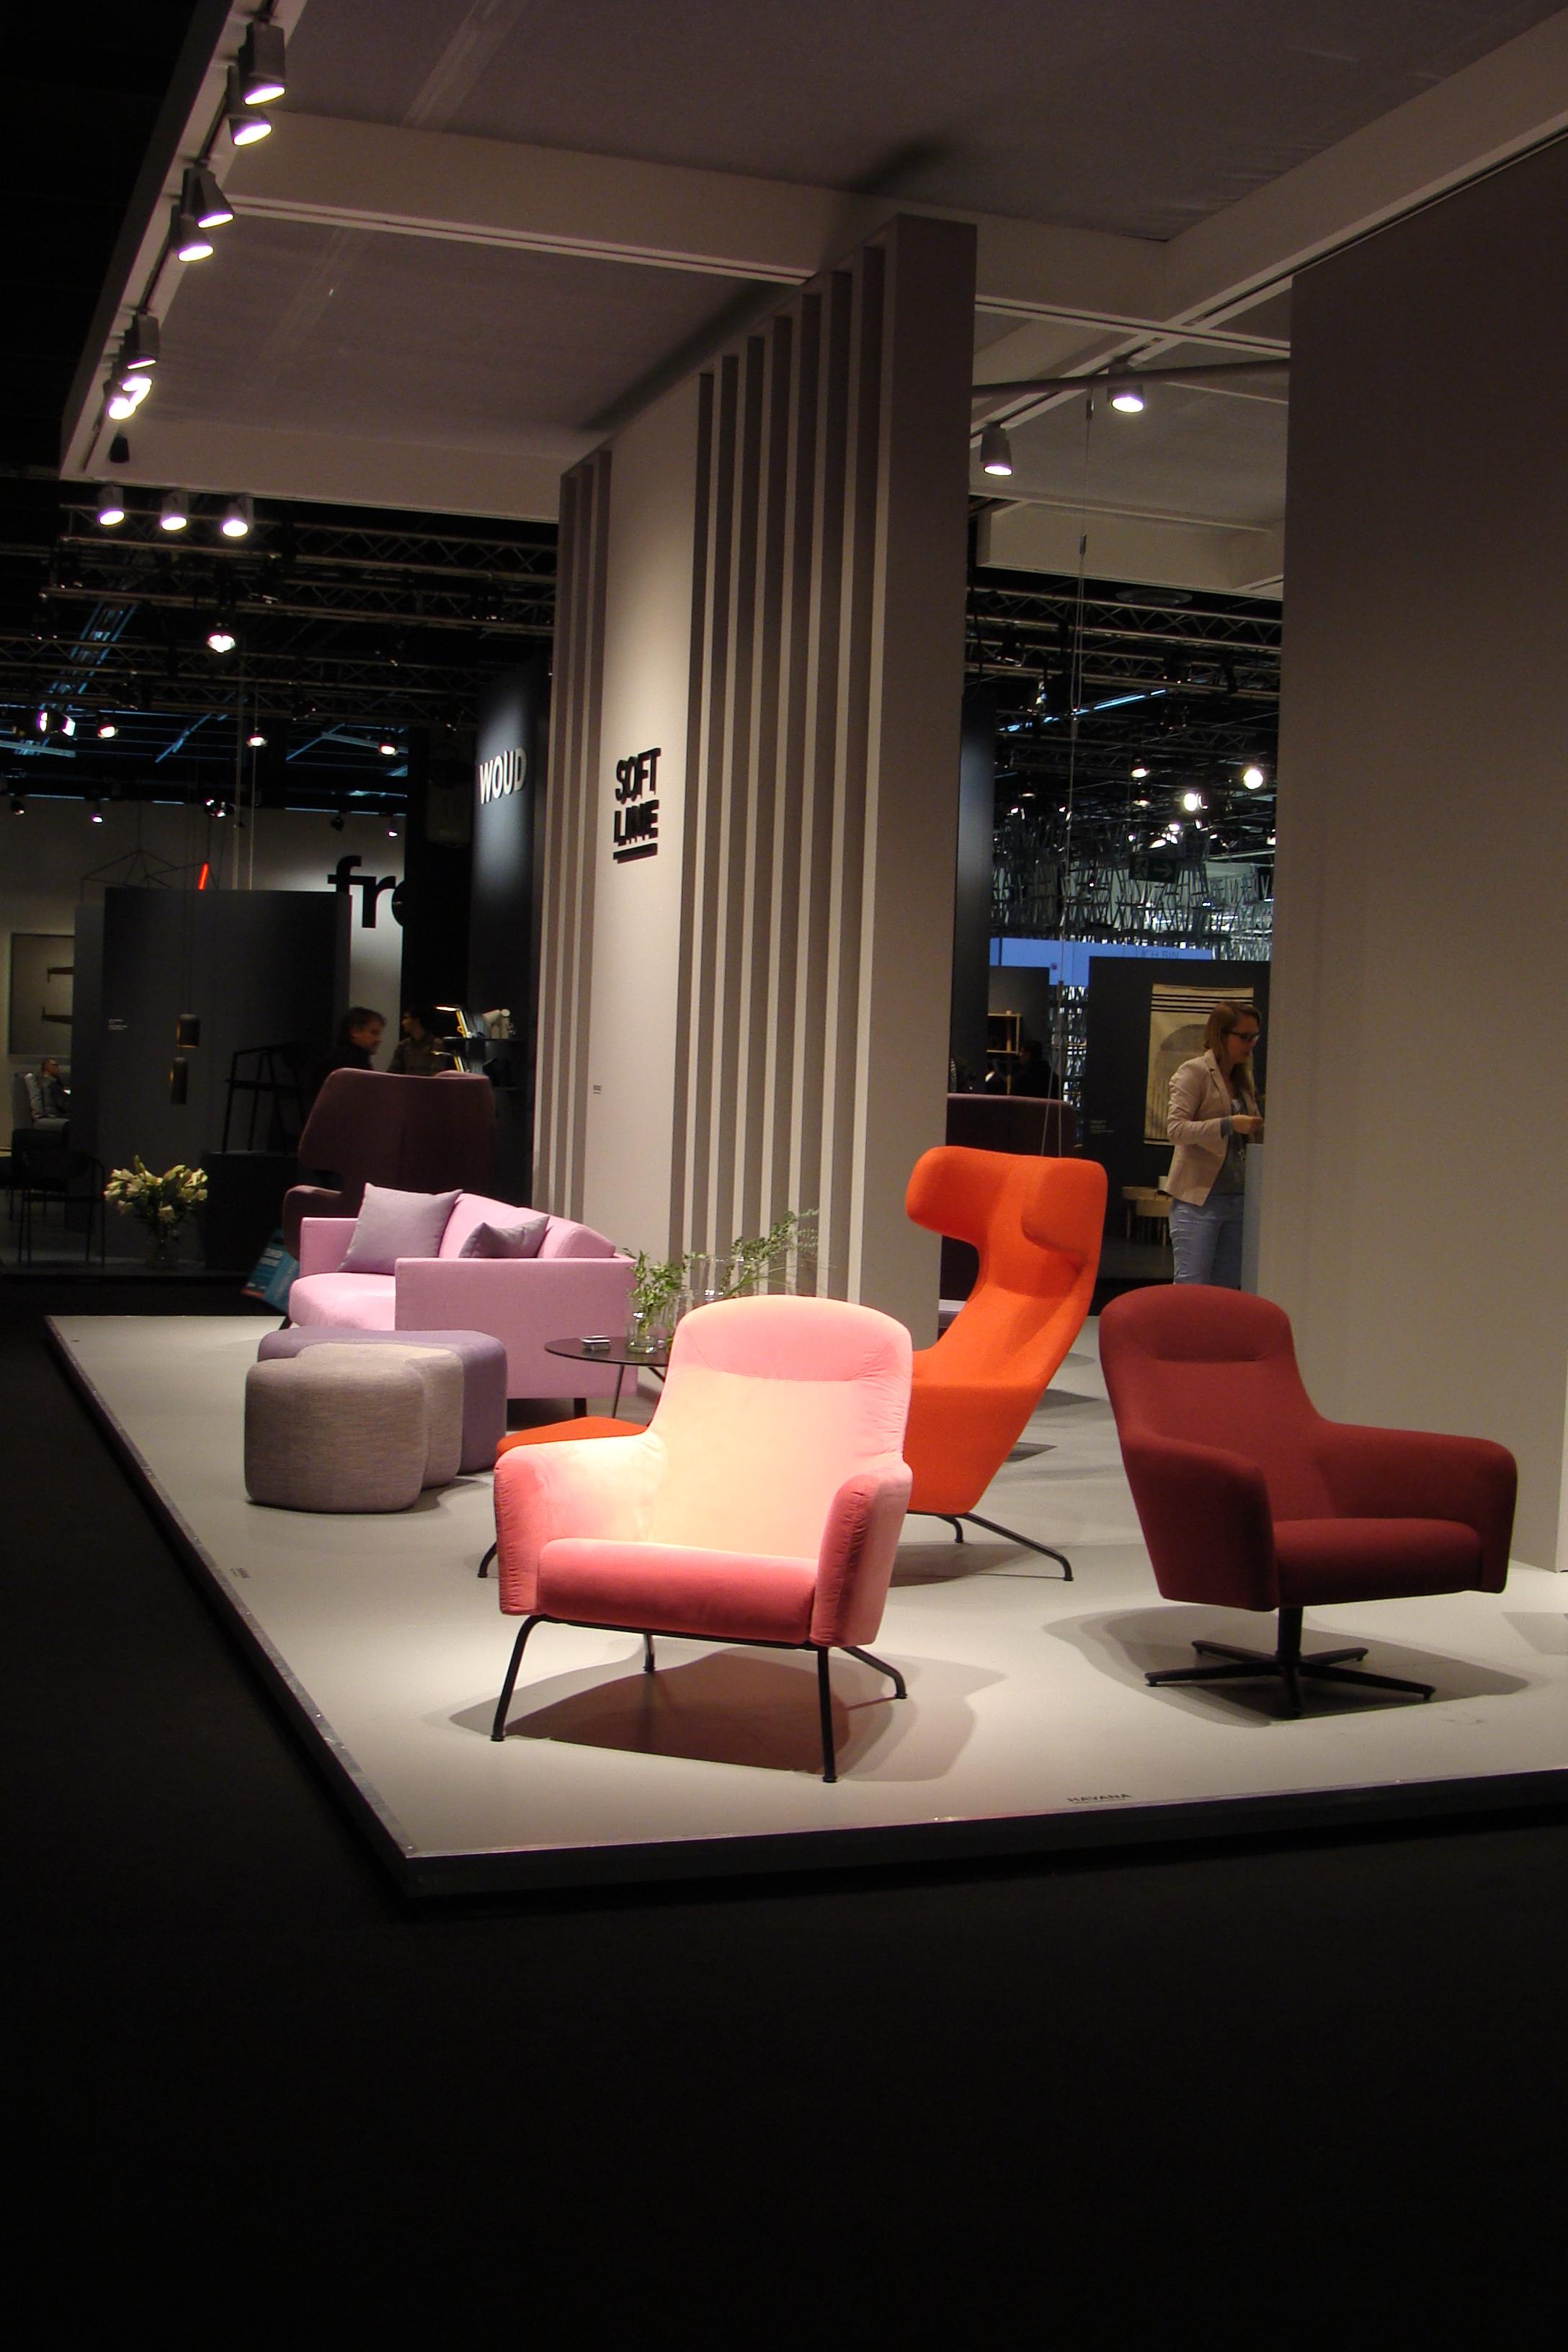 Polstermöbel von Soft Line #hocker #sofa #ohrensessel ©Mareike Kühn Interior Stylist & Visual Merchandiser